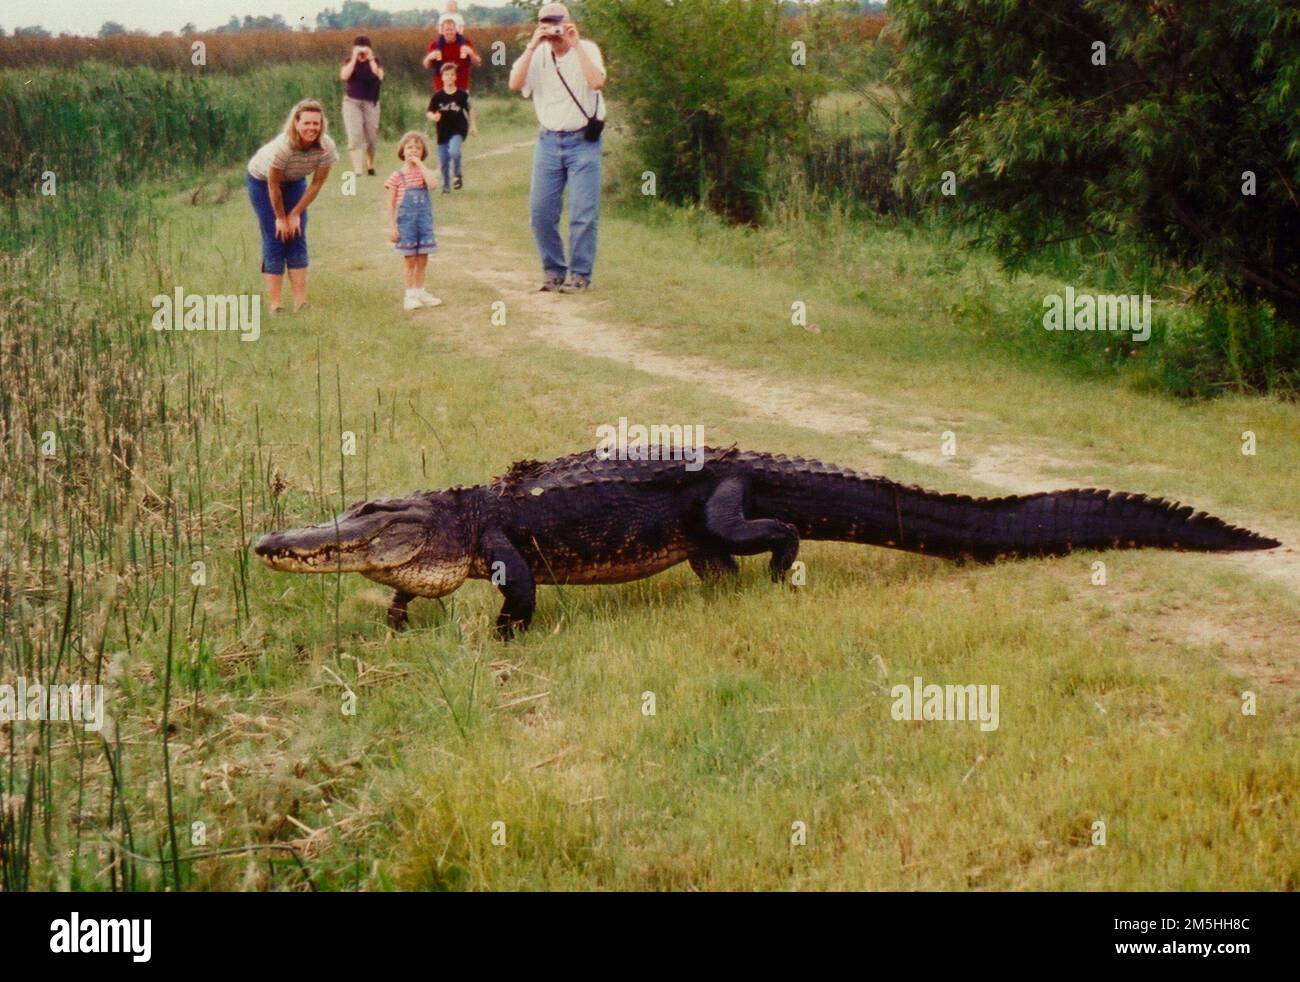 Creole Nature Trail - Alligator Auf Der Anderen Seite Des Pfads. Eine Familie kommt einem Alligator, der den Weg kreuzt, nahe, aber nicht zu nah, bevor er in der Nähe des Creole Nature Trail liegt. Lage: Nahe Creole Nature Trail, Louisiana (29,734° N 92,861° W) Stockfoto